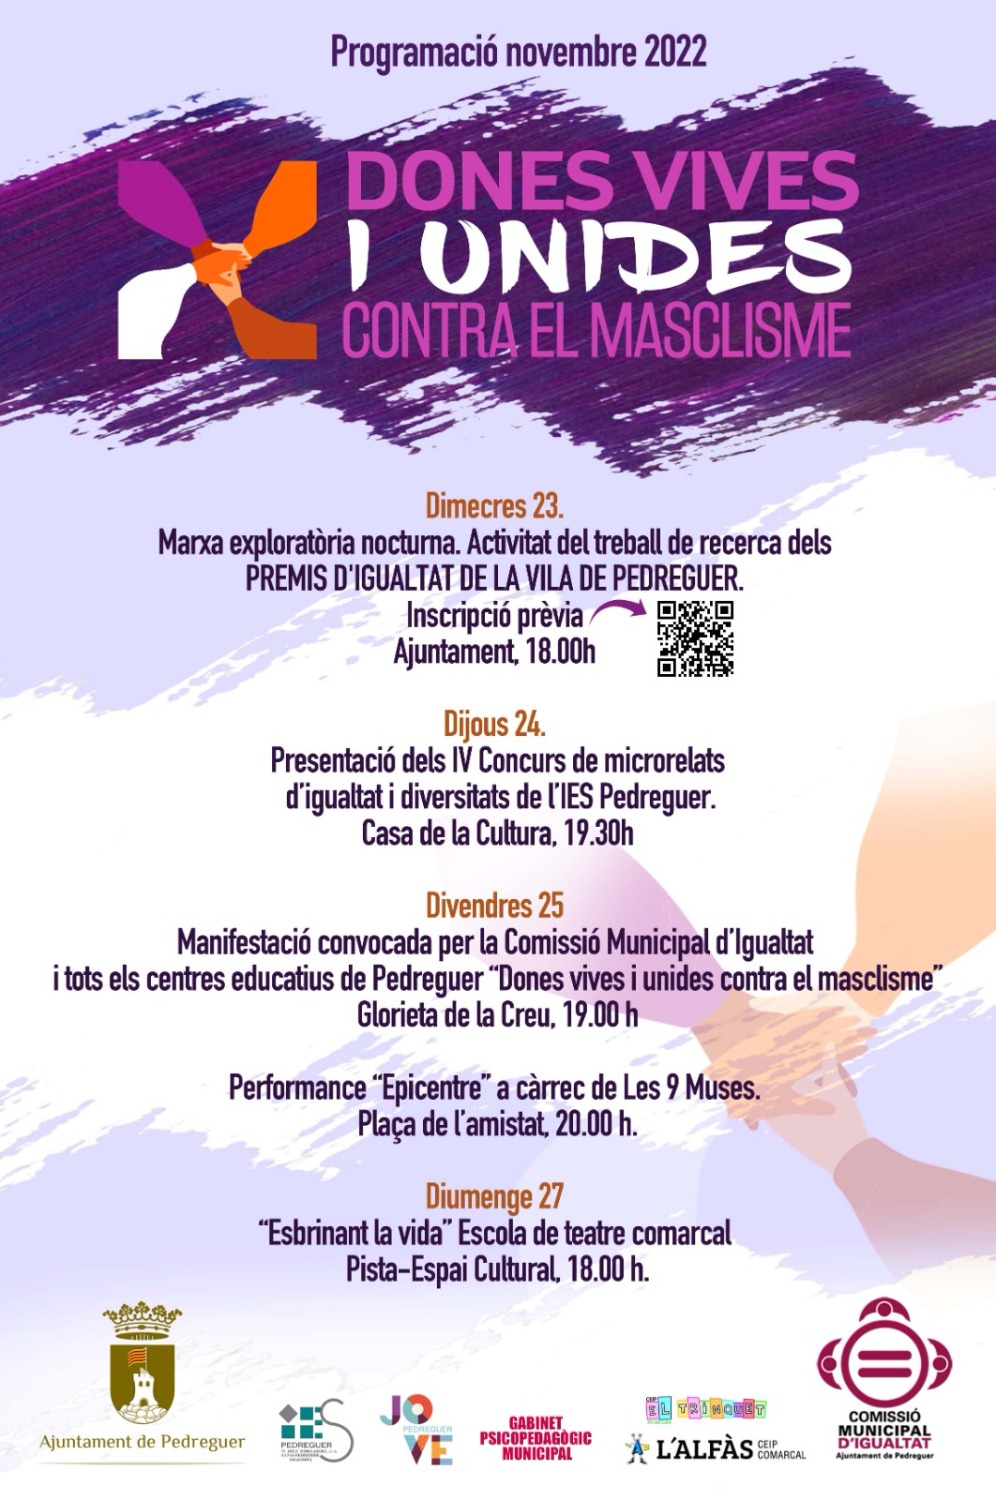 La comisión de igualdad municipal de Pedreguer presenta la programación de noviembre bajo el lema MUJERES VIVAS Y UNIDAS CONTRA EL MACHISMO